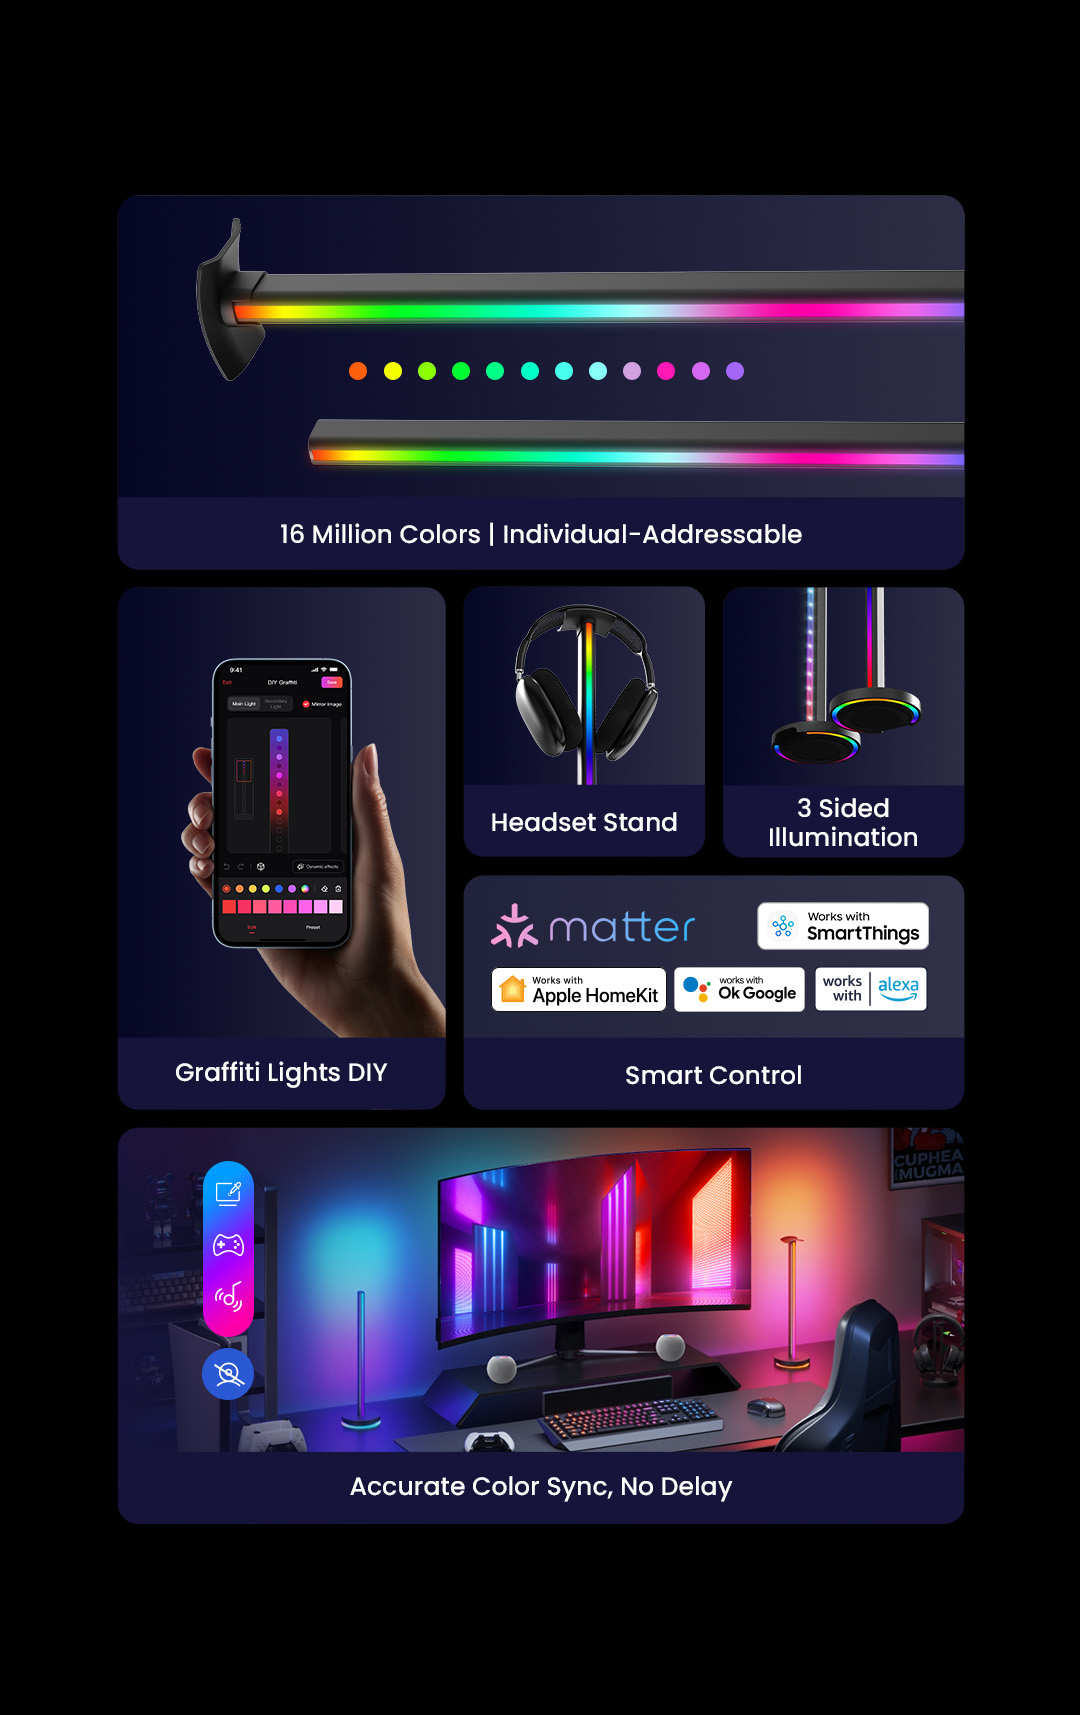 Hình ảnh Set 2 Đèn thanh RGB thông minh đa năng Yeelight Beam - Hỗ trợ Matter, Homekit - Game sync, Music sync